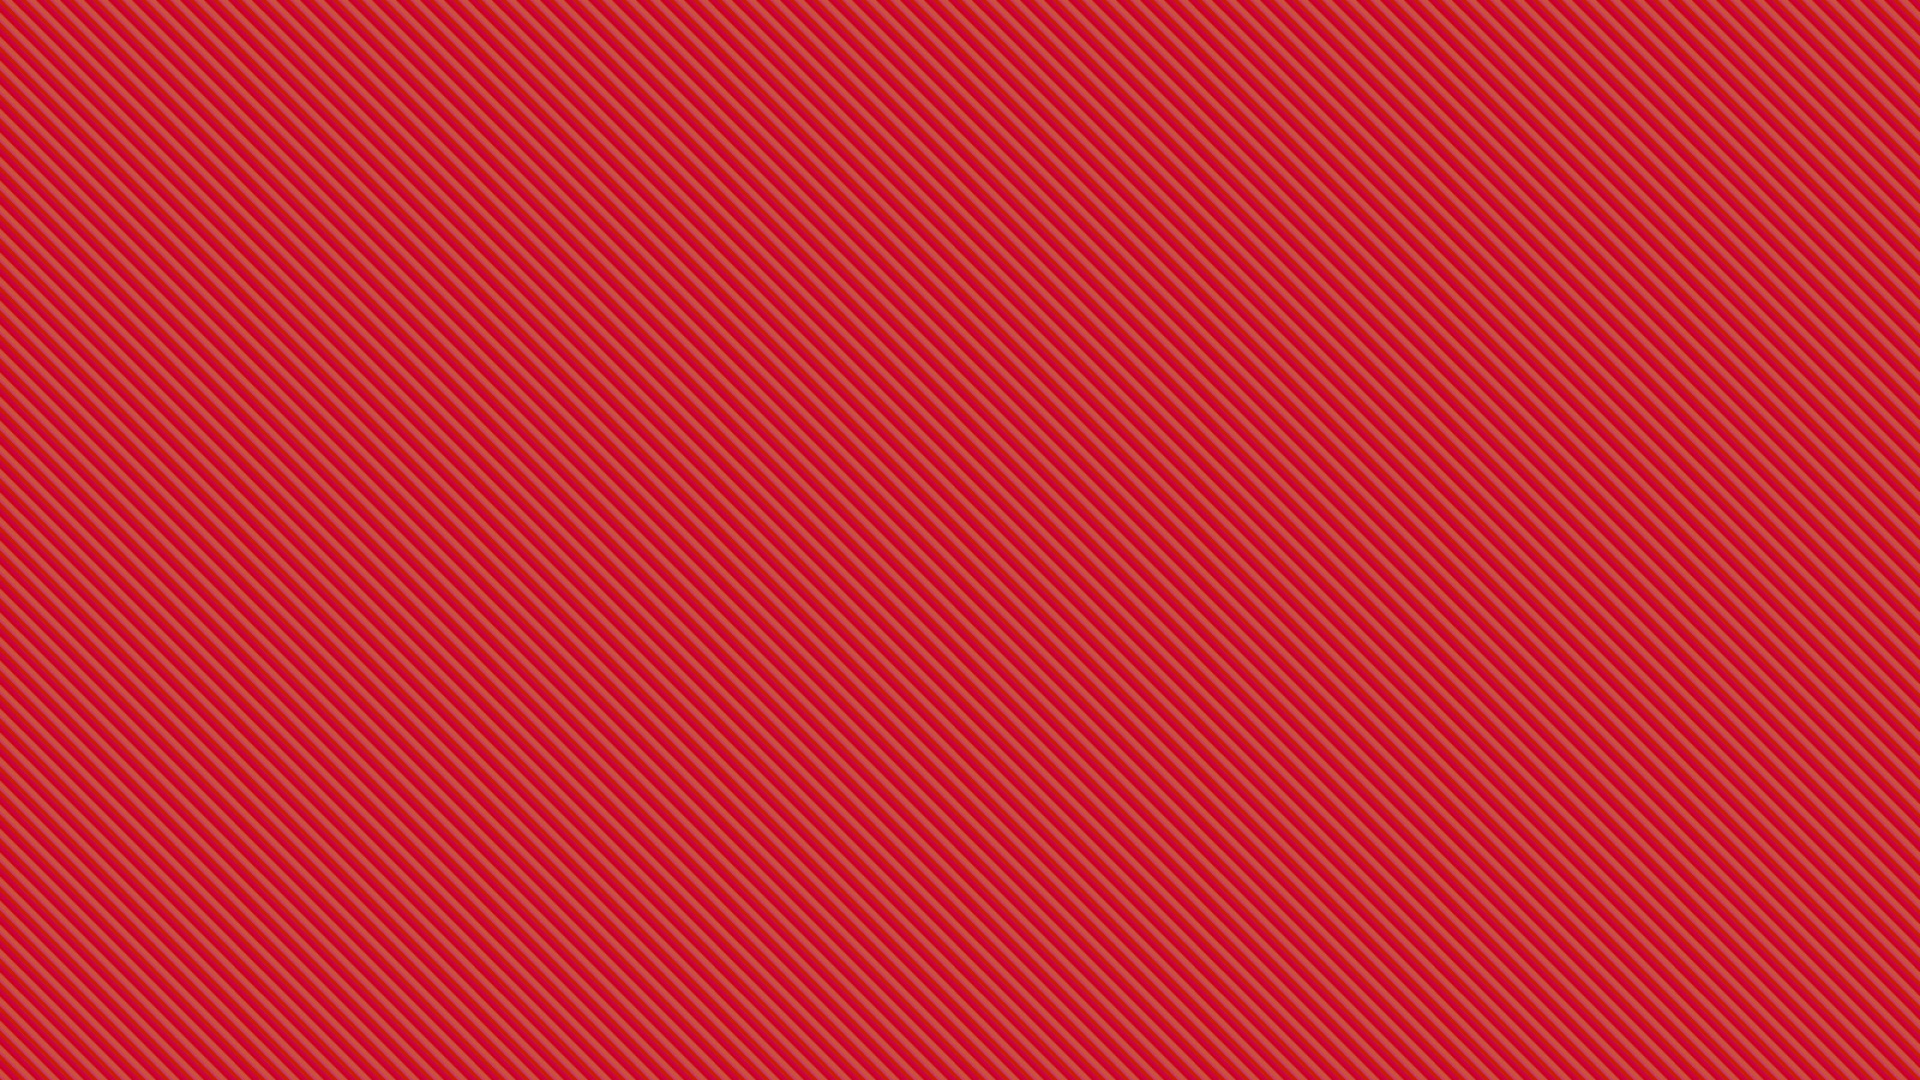 Rot-weiß Gestreiftes Textil. Wallpaper in 1920x1080 Resolution